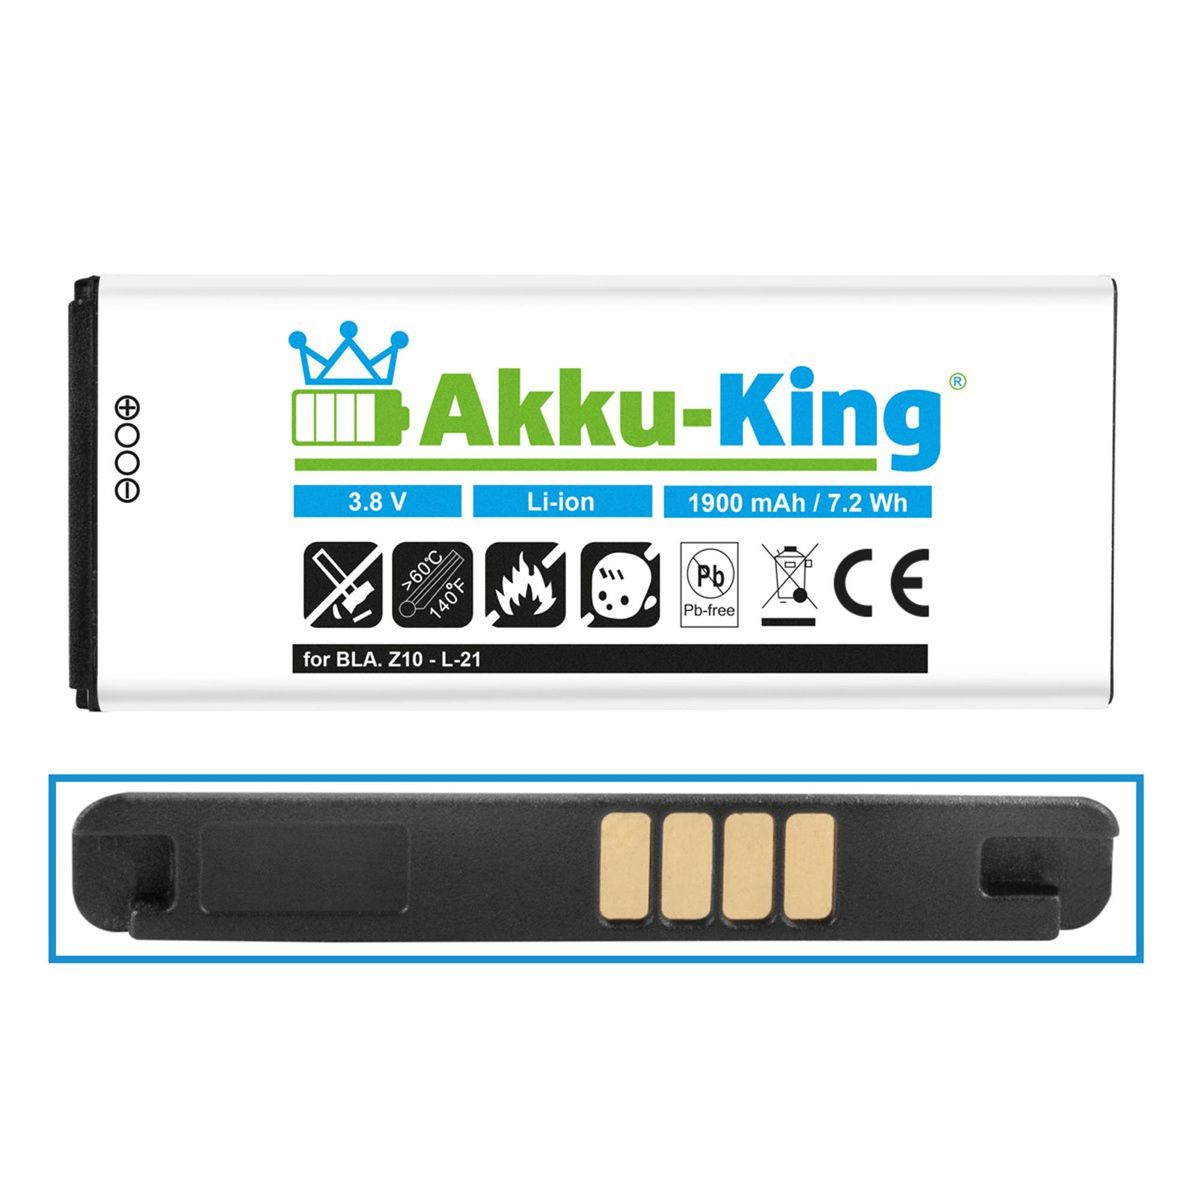 1900mAh für Akku 3.8 BlackBerry Handy-Akku, Volt, AKKU-KING L-S1 Li-Ion